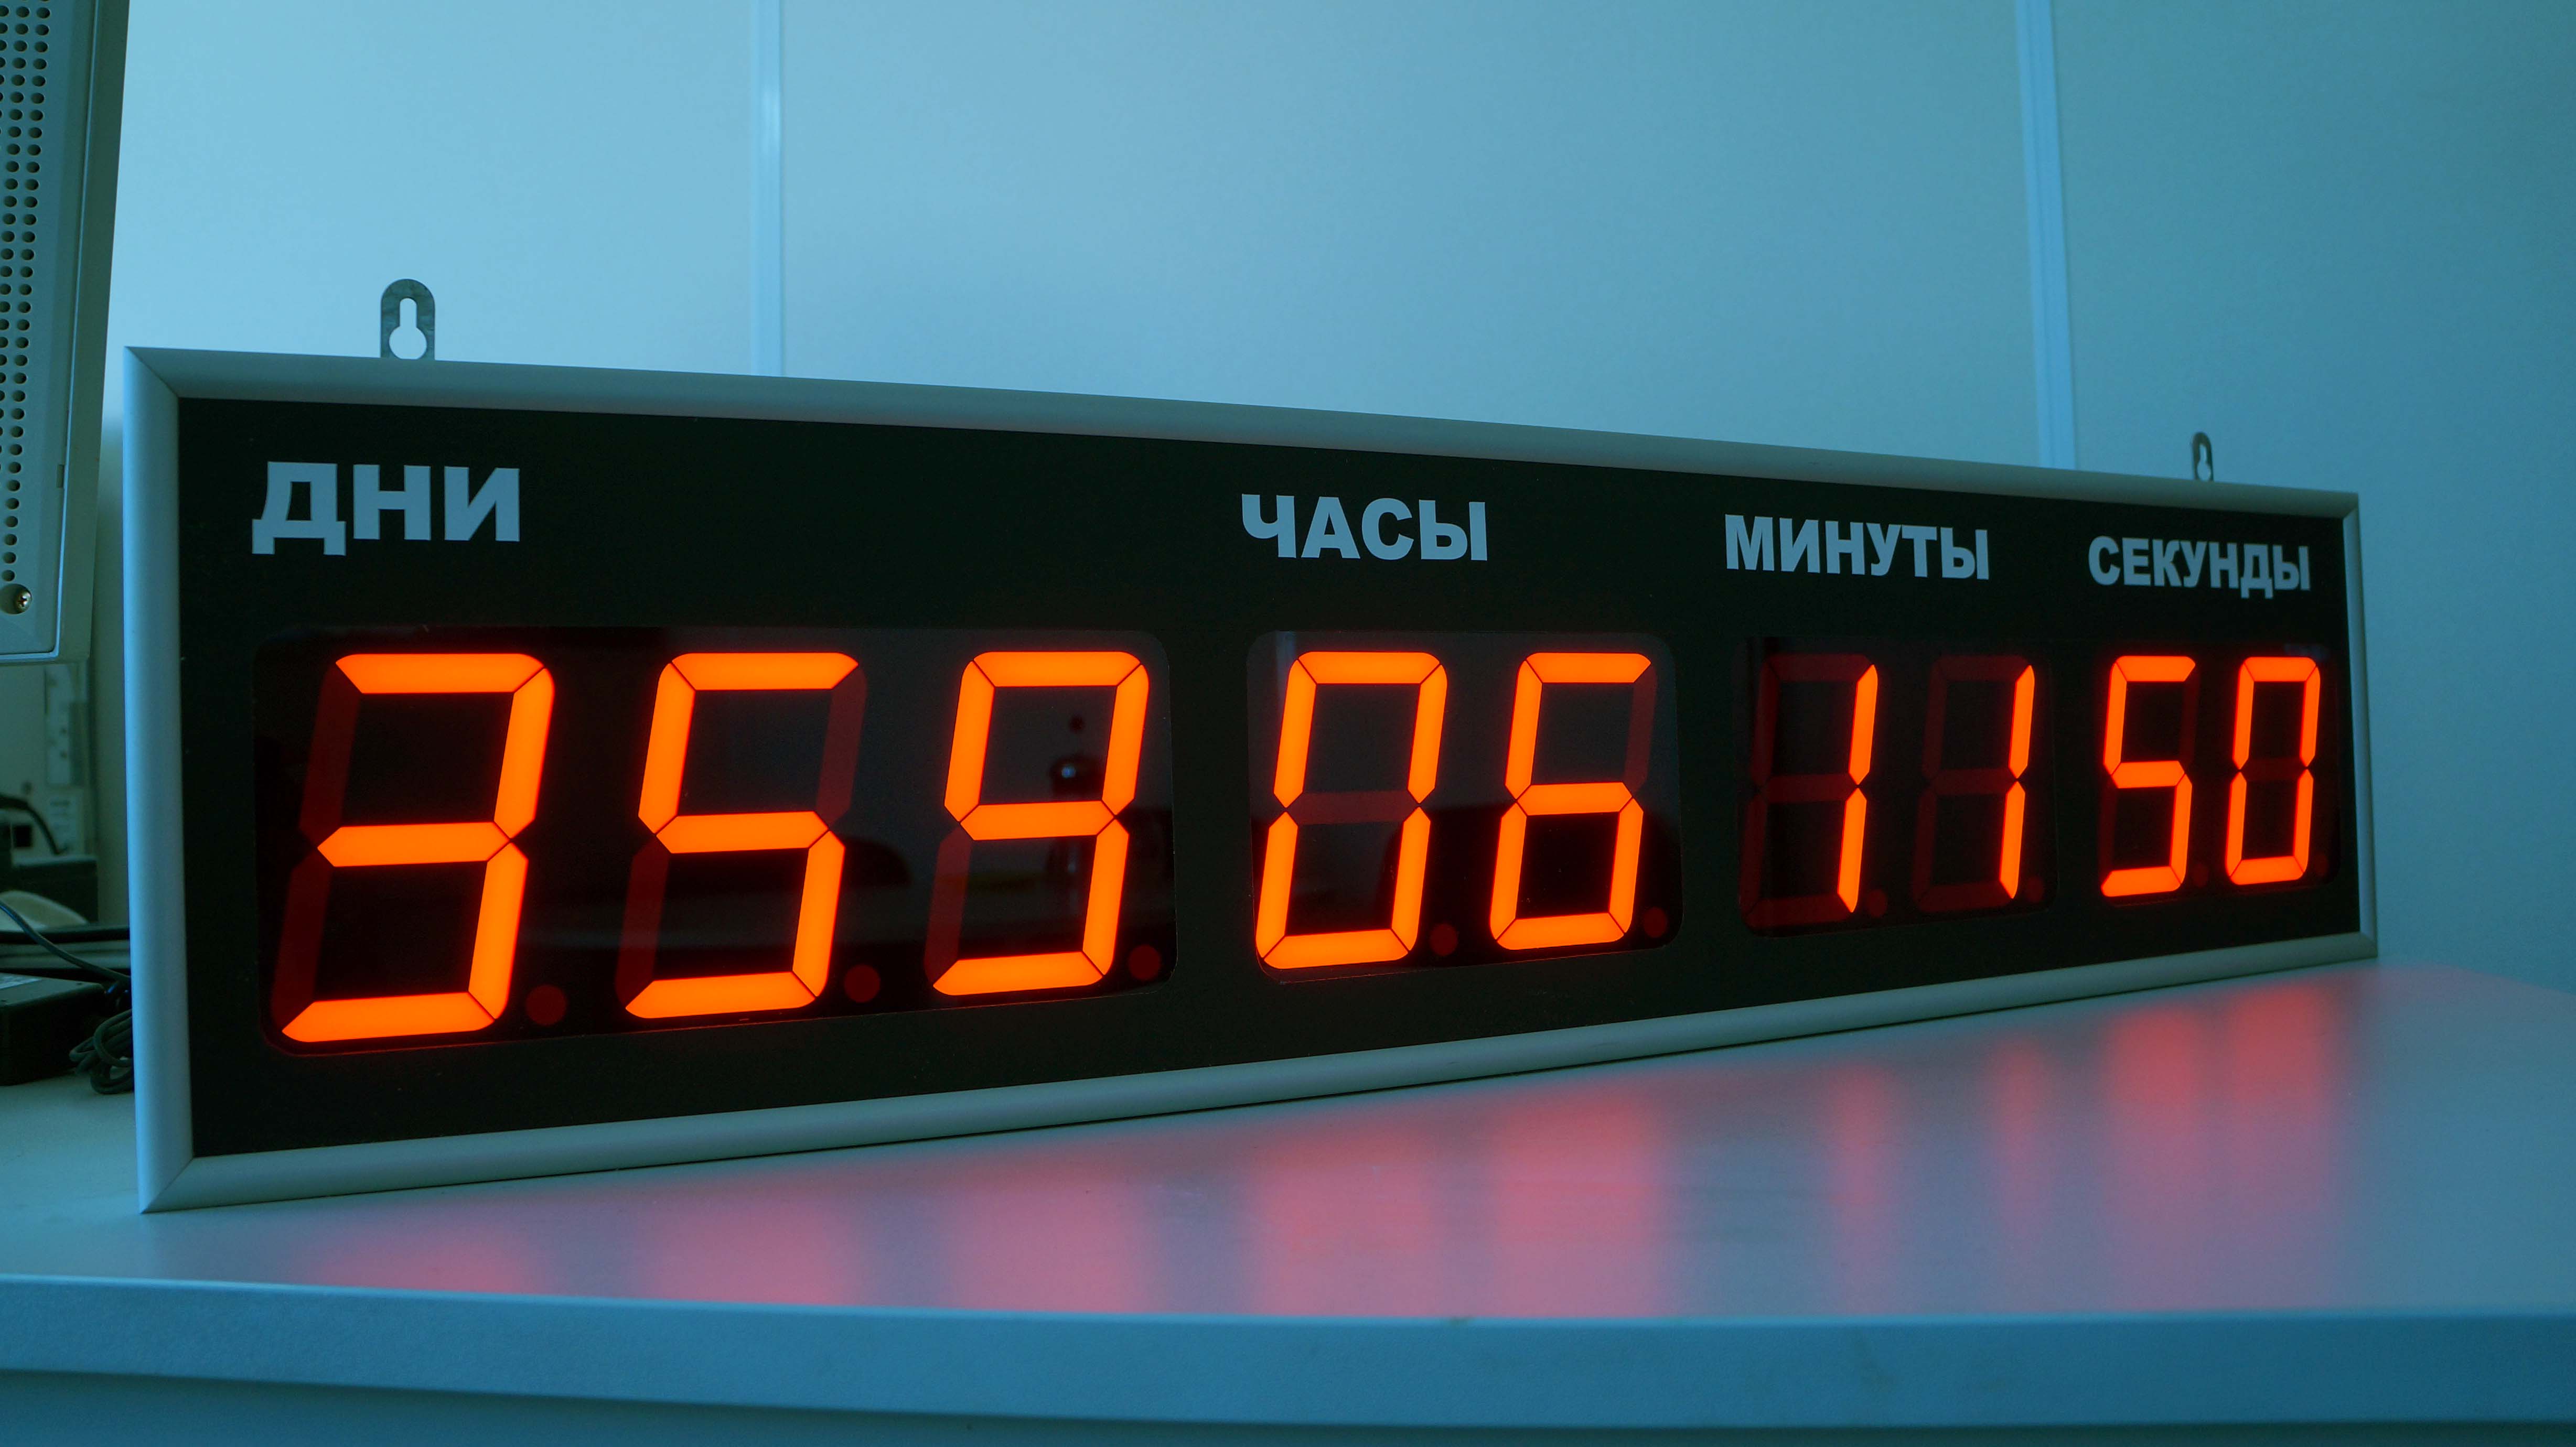 Электронное время с секундами. 70-0530 Rexant цифровые часы с таймером обратного отсчета RX-100а. Электронные часы интеграл Чэ-01 с ЖК дисплеем. Табло с таймером обратного отсчета. Часы настенные электронные.